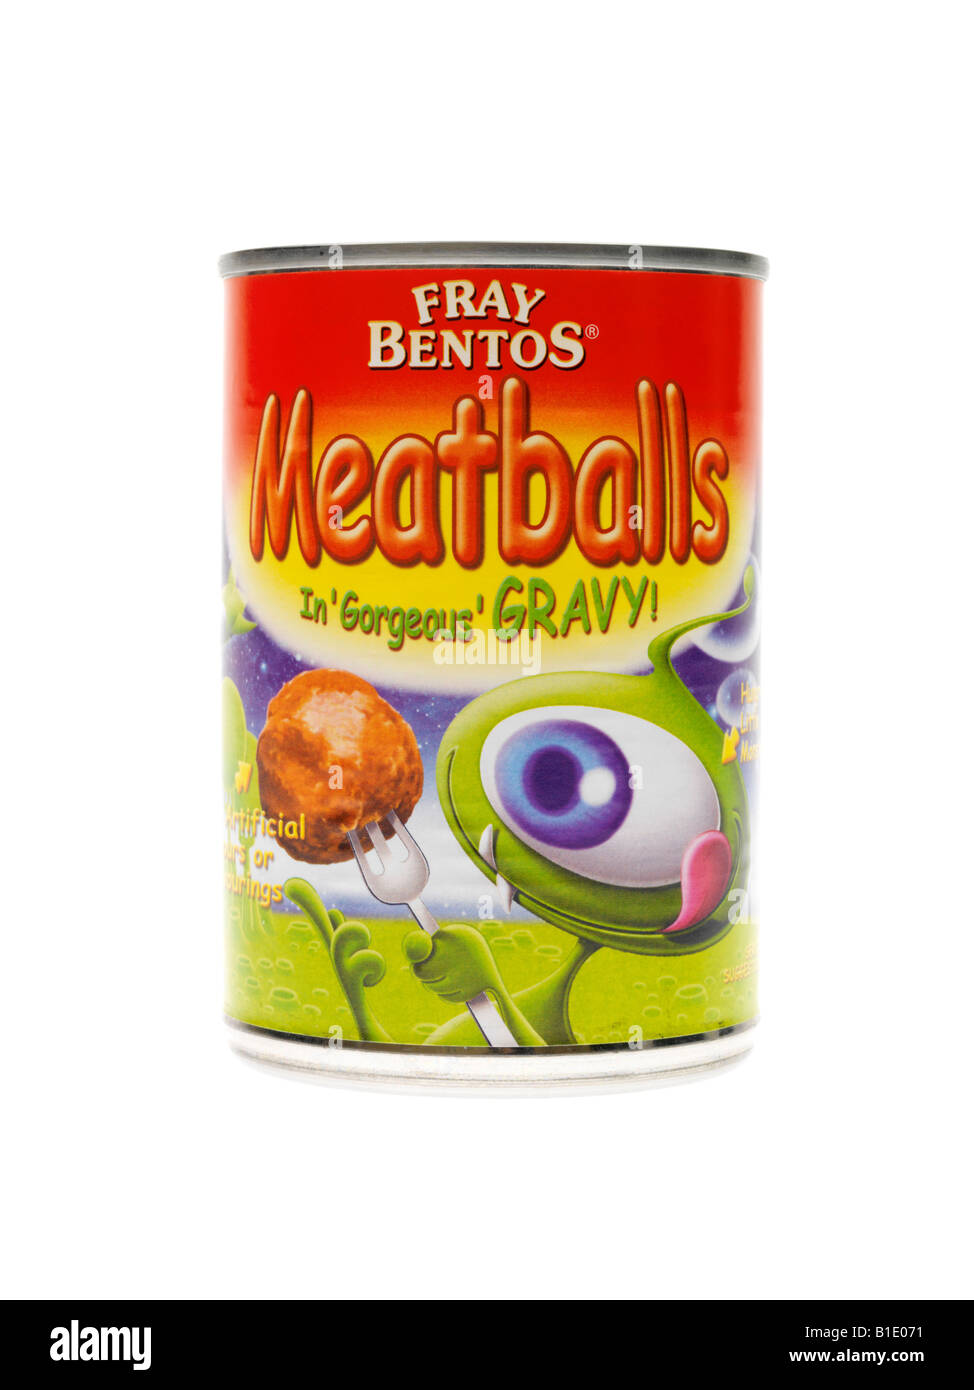 campbells meatballs tesco